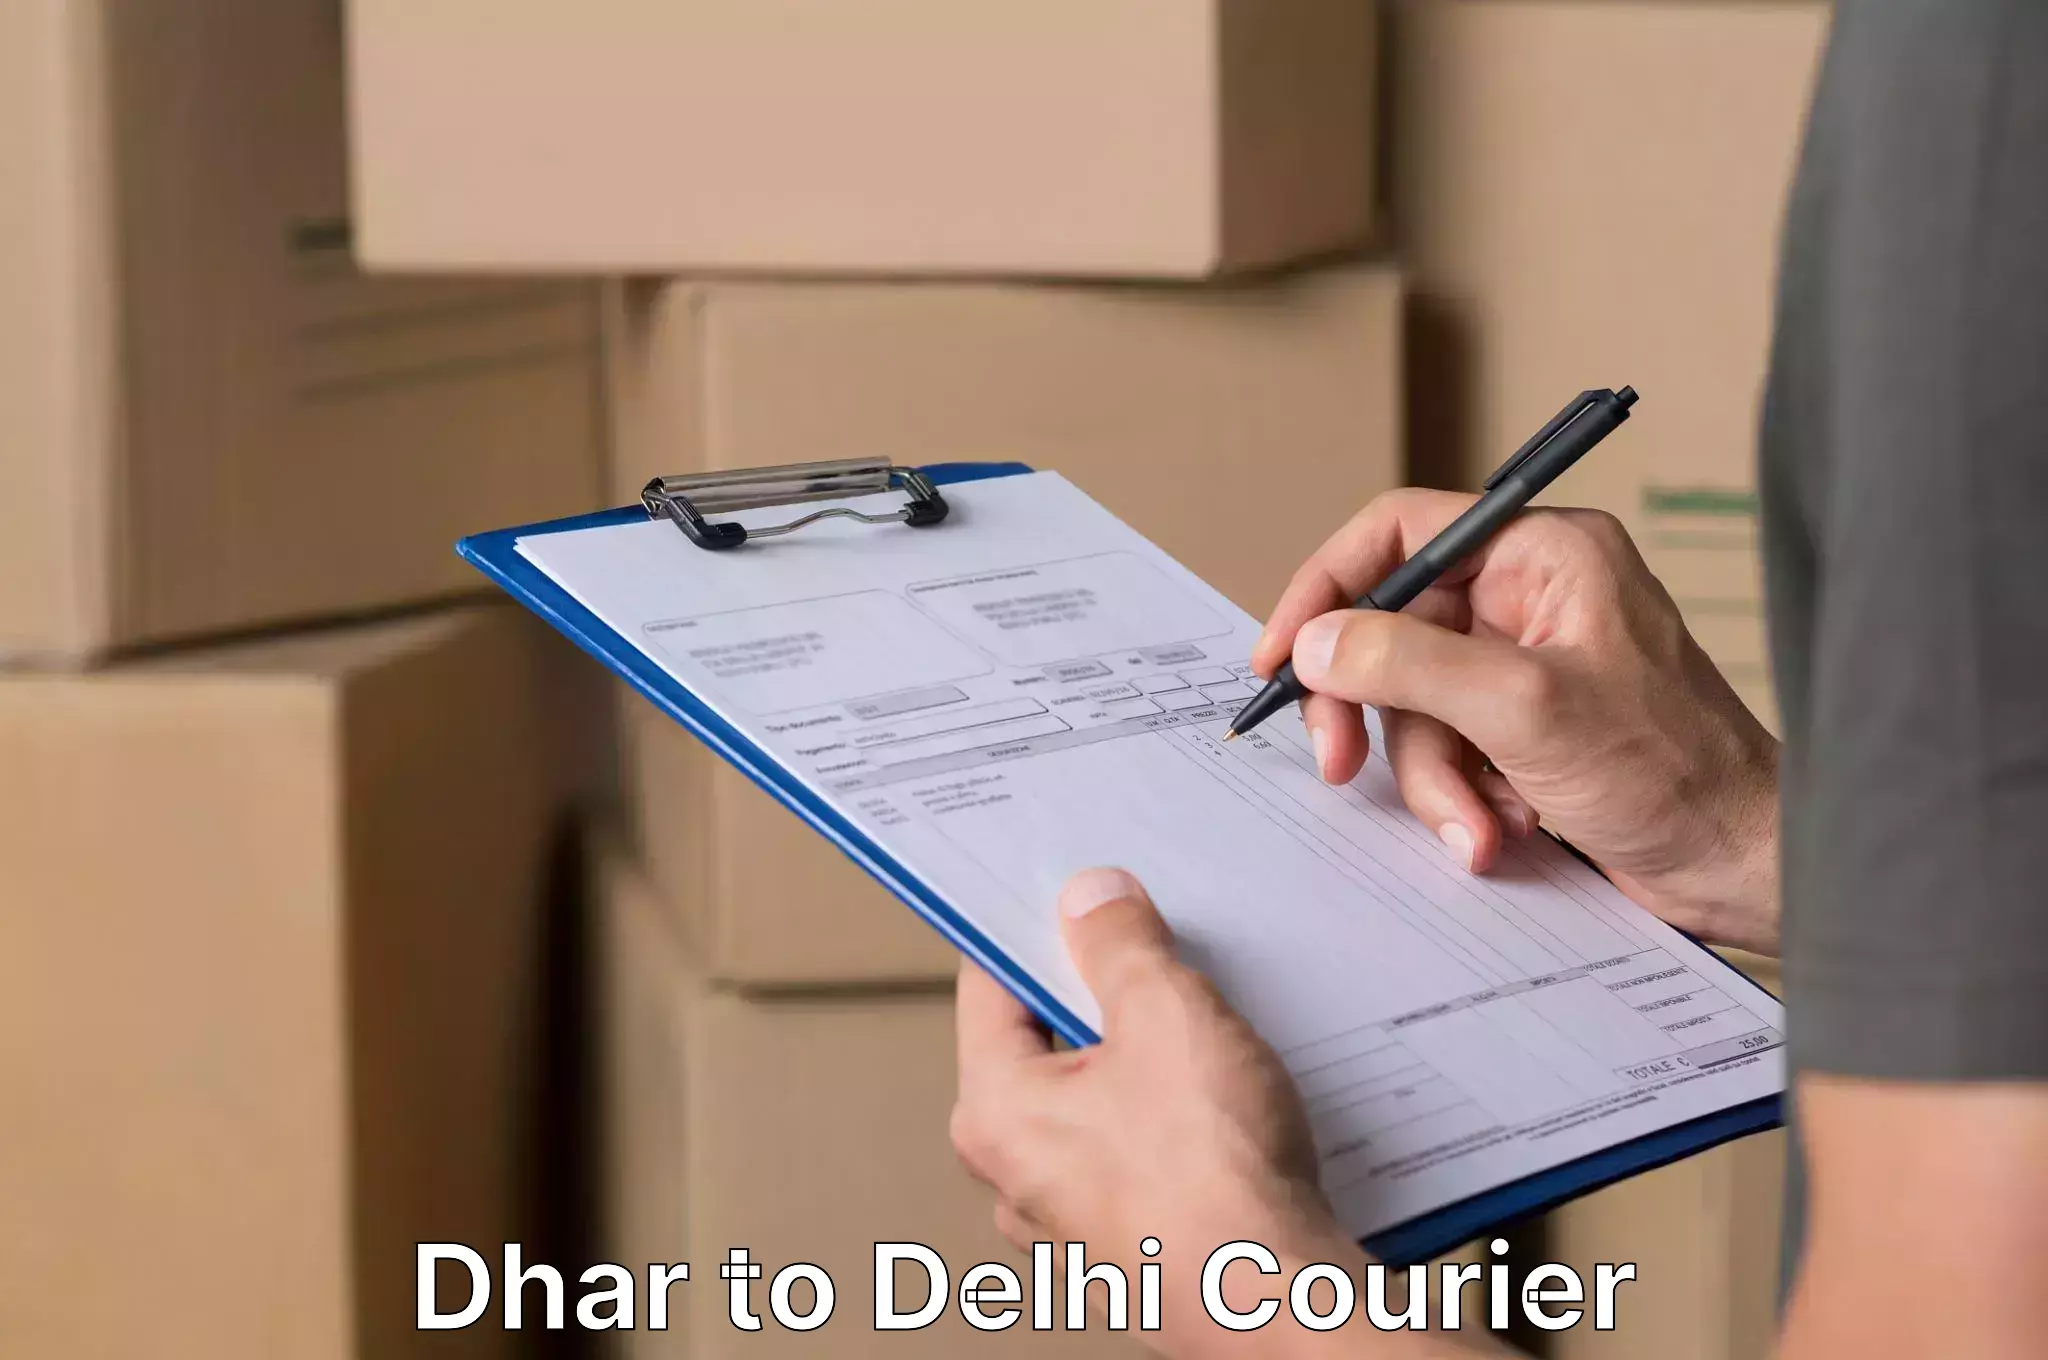 Furniture delivery service Dhar to Jamia Millia Islamia New Delhi